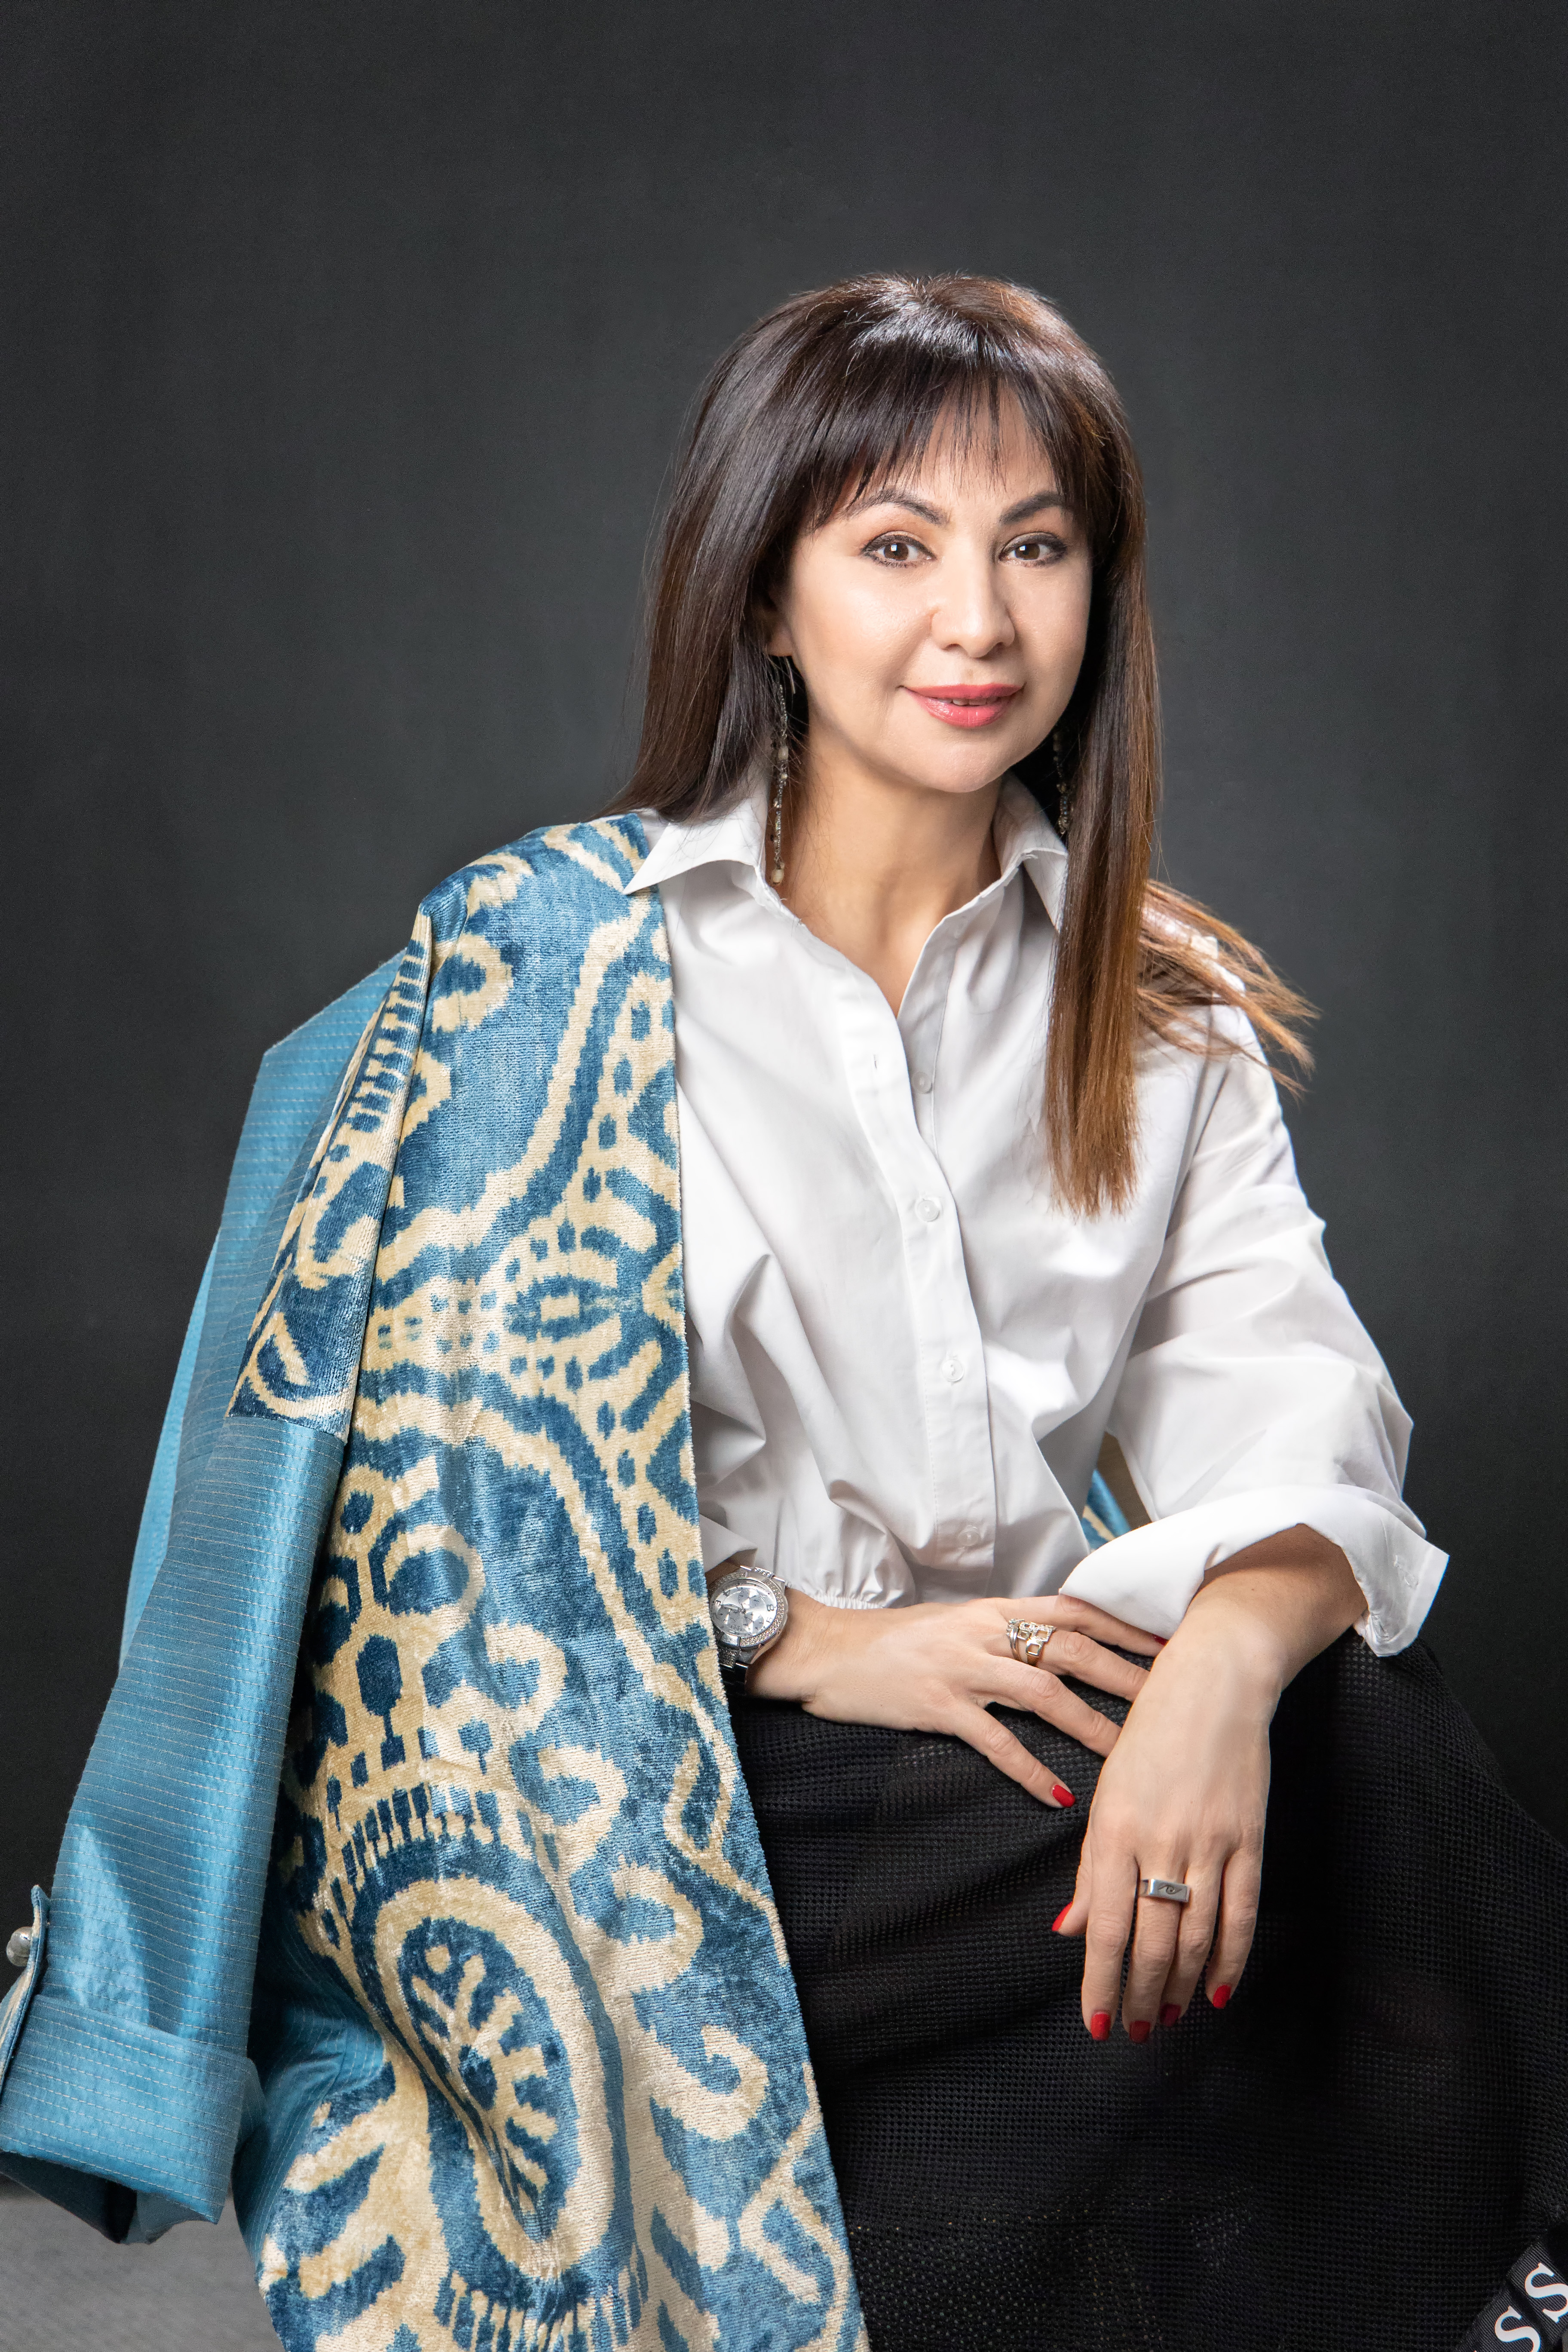 Узбекский бренд с японским названием, продвигающий этно-стиль. Дизайнер Мархамат Умарова рассказала о своем детище